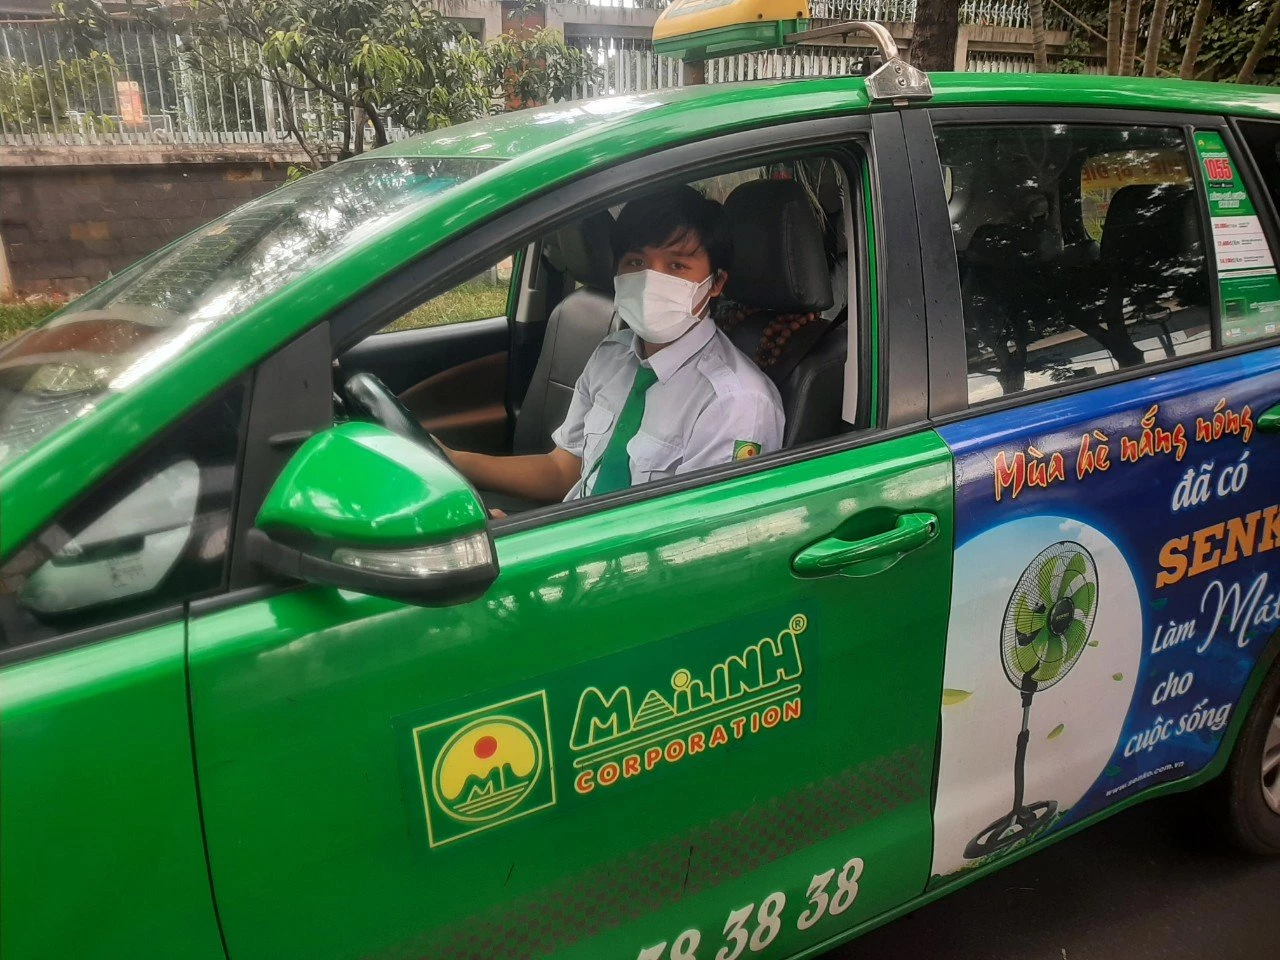 Lái xe taxi Mai Linh Hồ Thanh Hải giúp sản phụ sinh con an toàn trên taxi trong đêm.